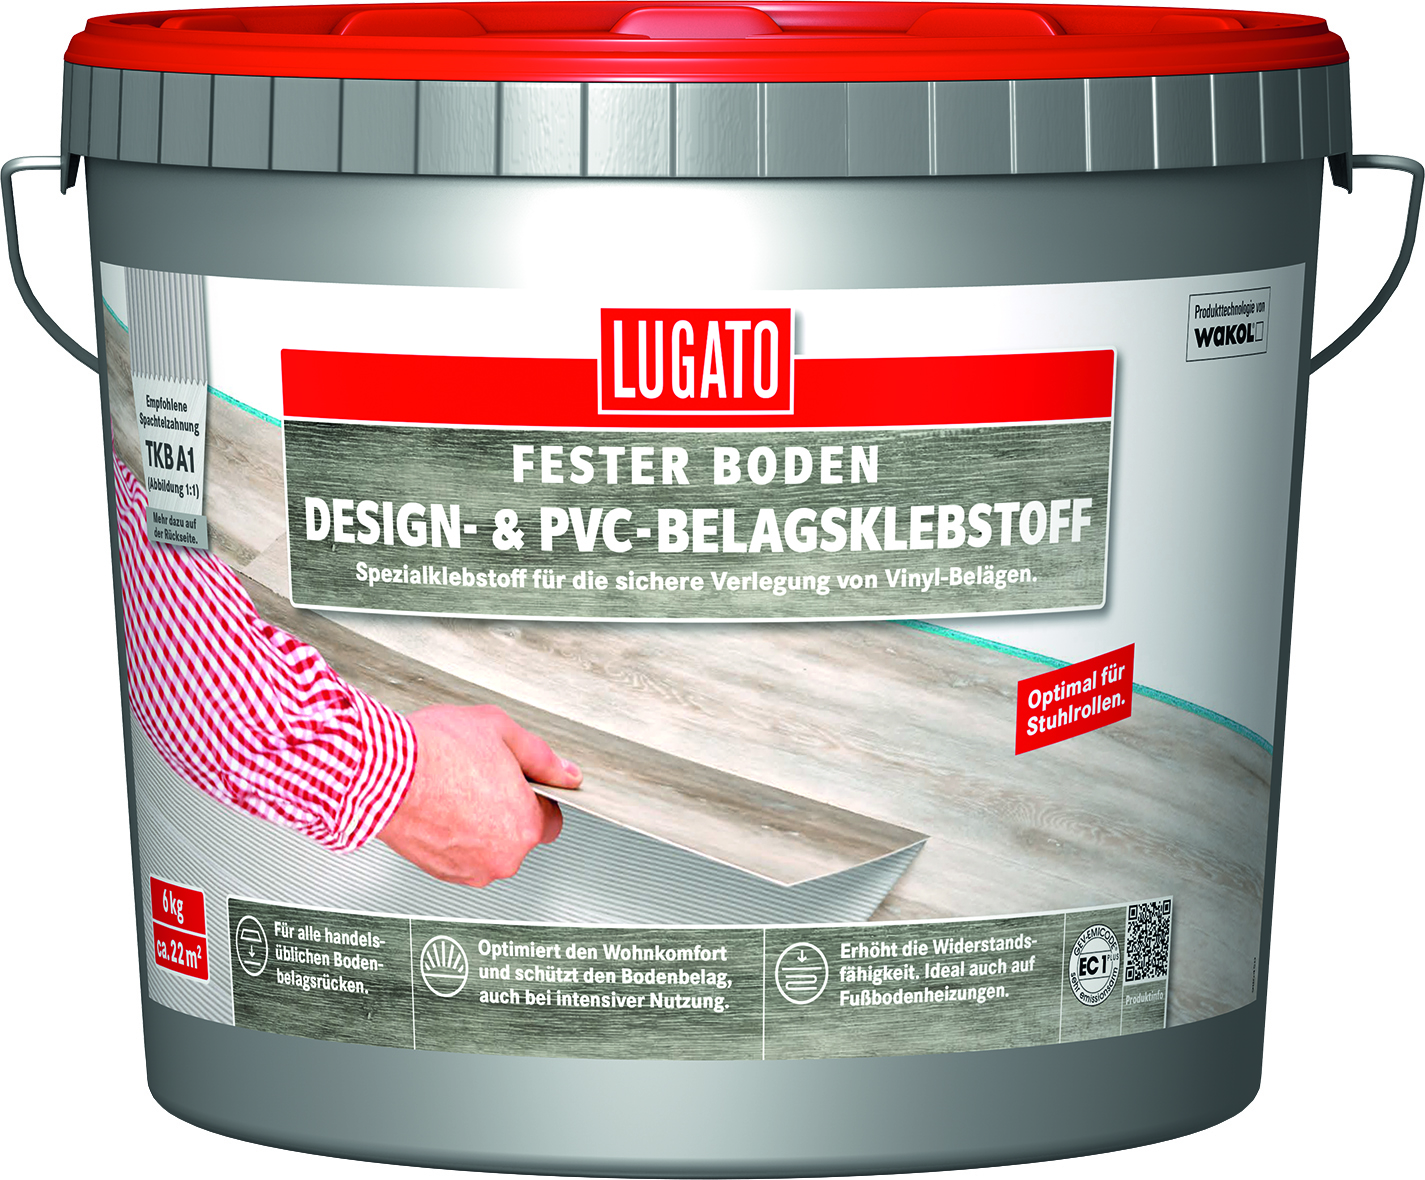 LUGATO Fester Boden Design- & PVC-Belagsklebstoff, 3 kg